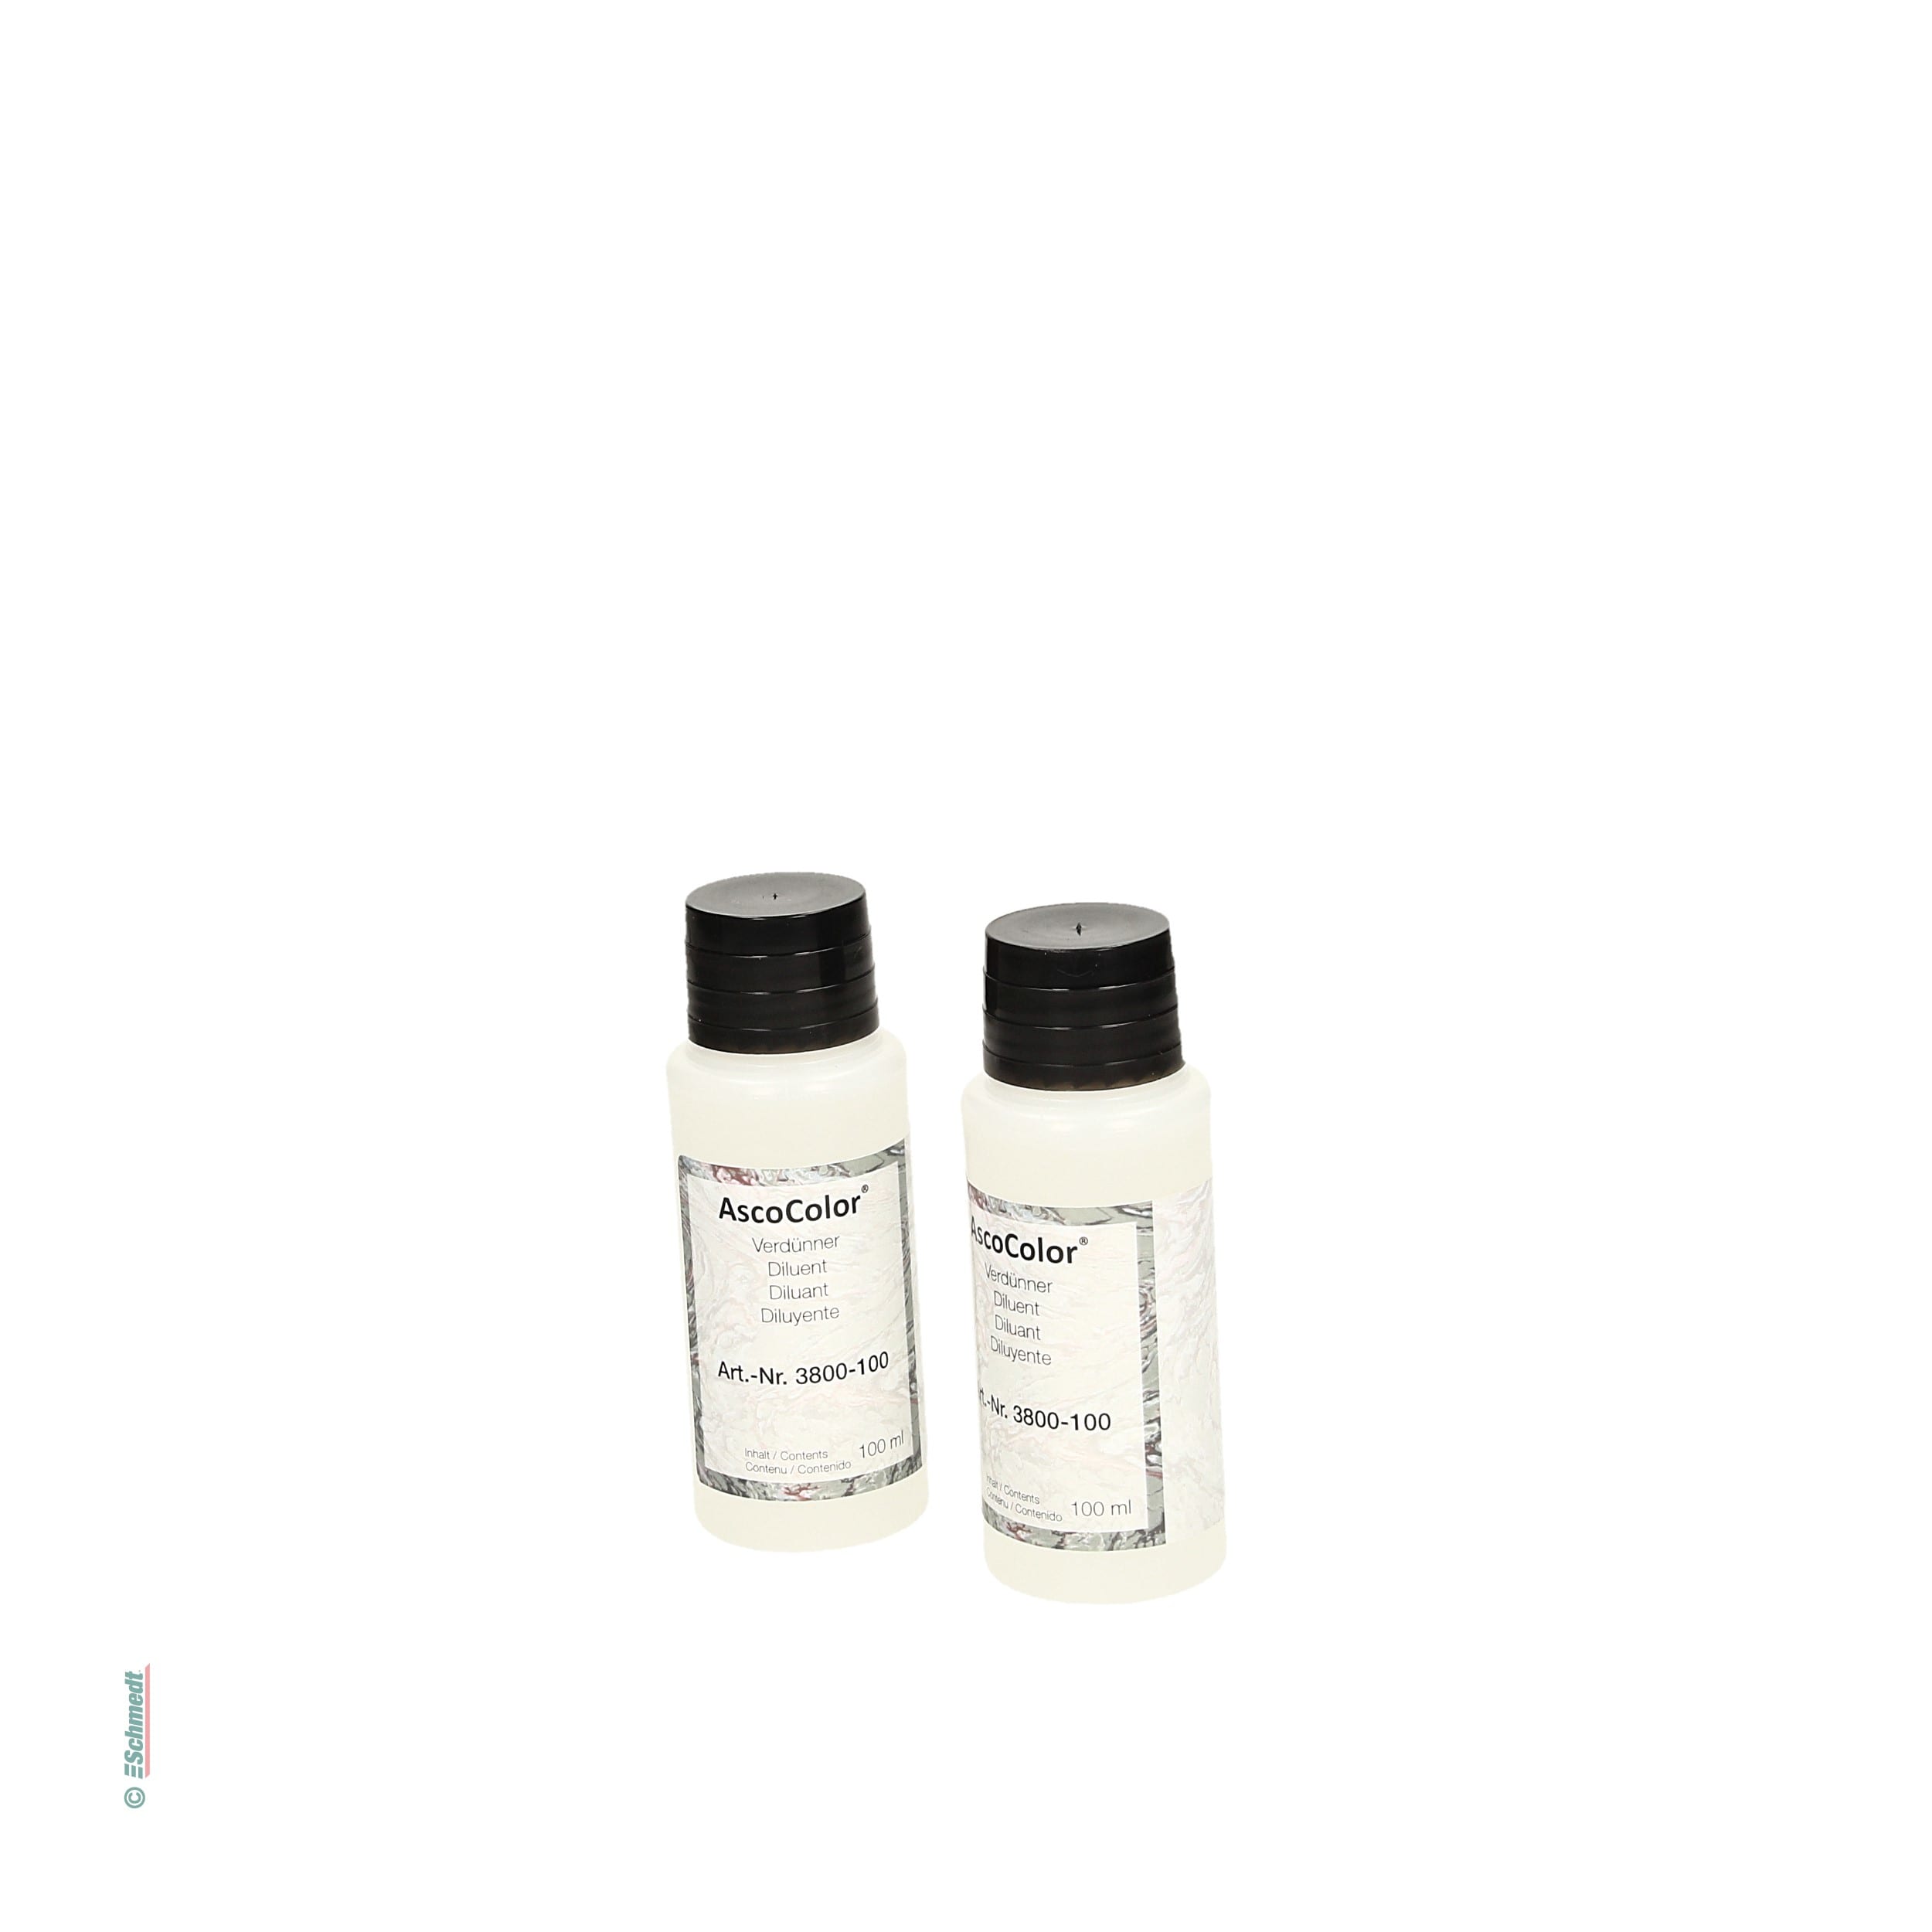 AscoColor® Verdünner / Reiniger - für Marmorierfarben - zum Verdünnen von AscoColor® Marmorierfarben und Entfernen von Farbresten...